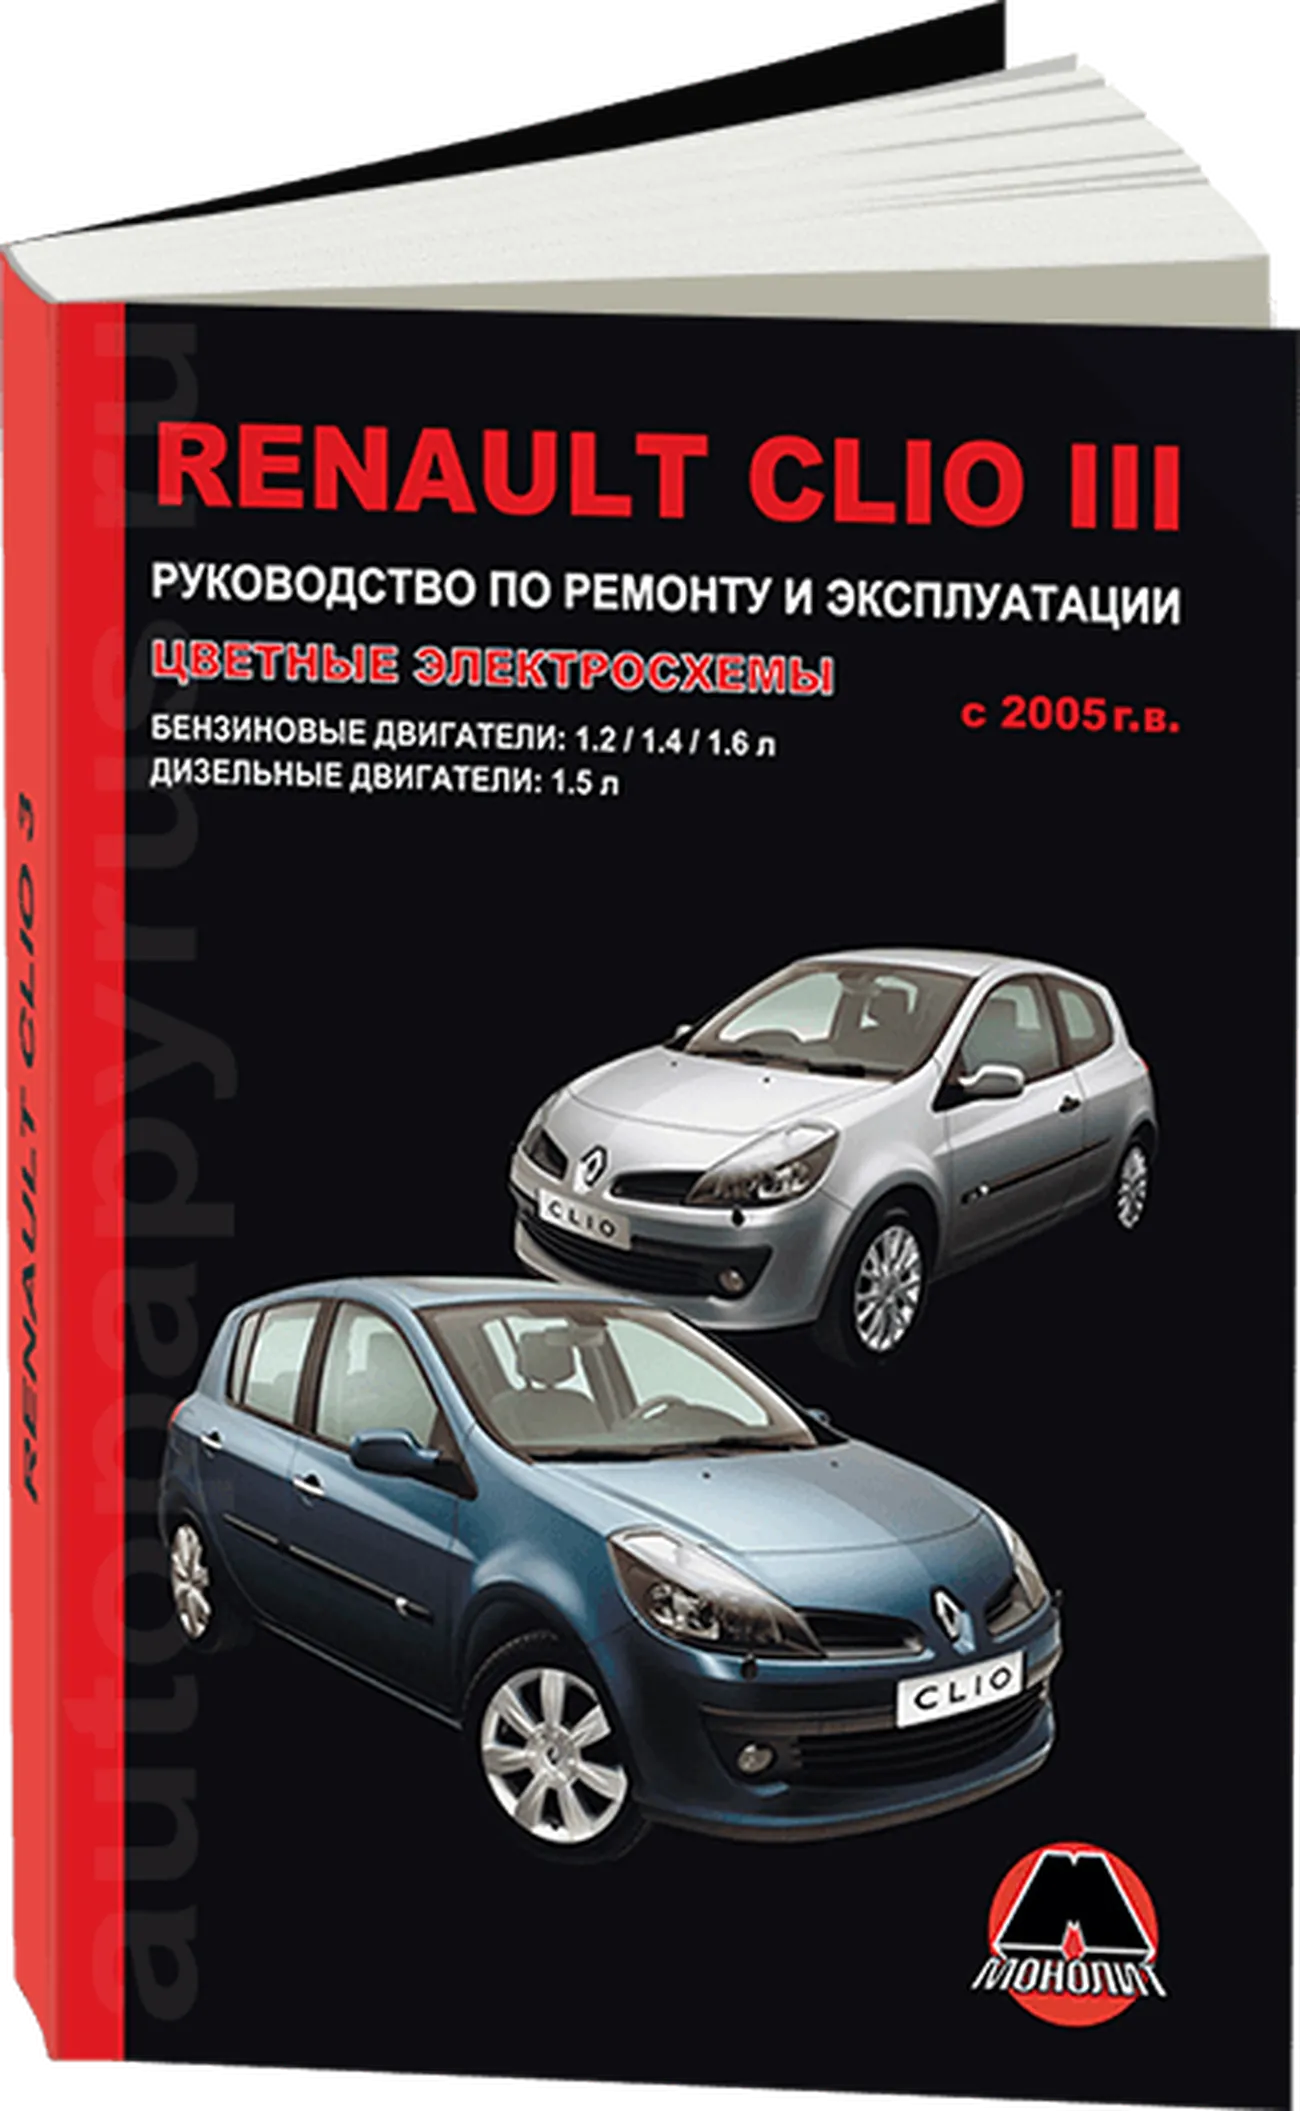 Книга: RENAULT CLIO III (б , д) с 2005 г.в. рем., экспл., то | Монолит